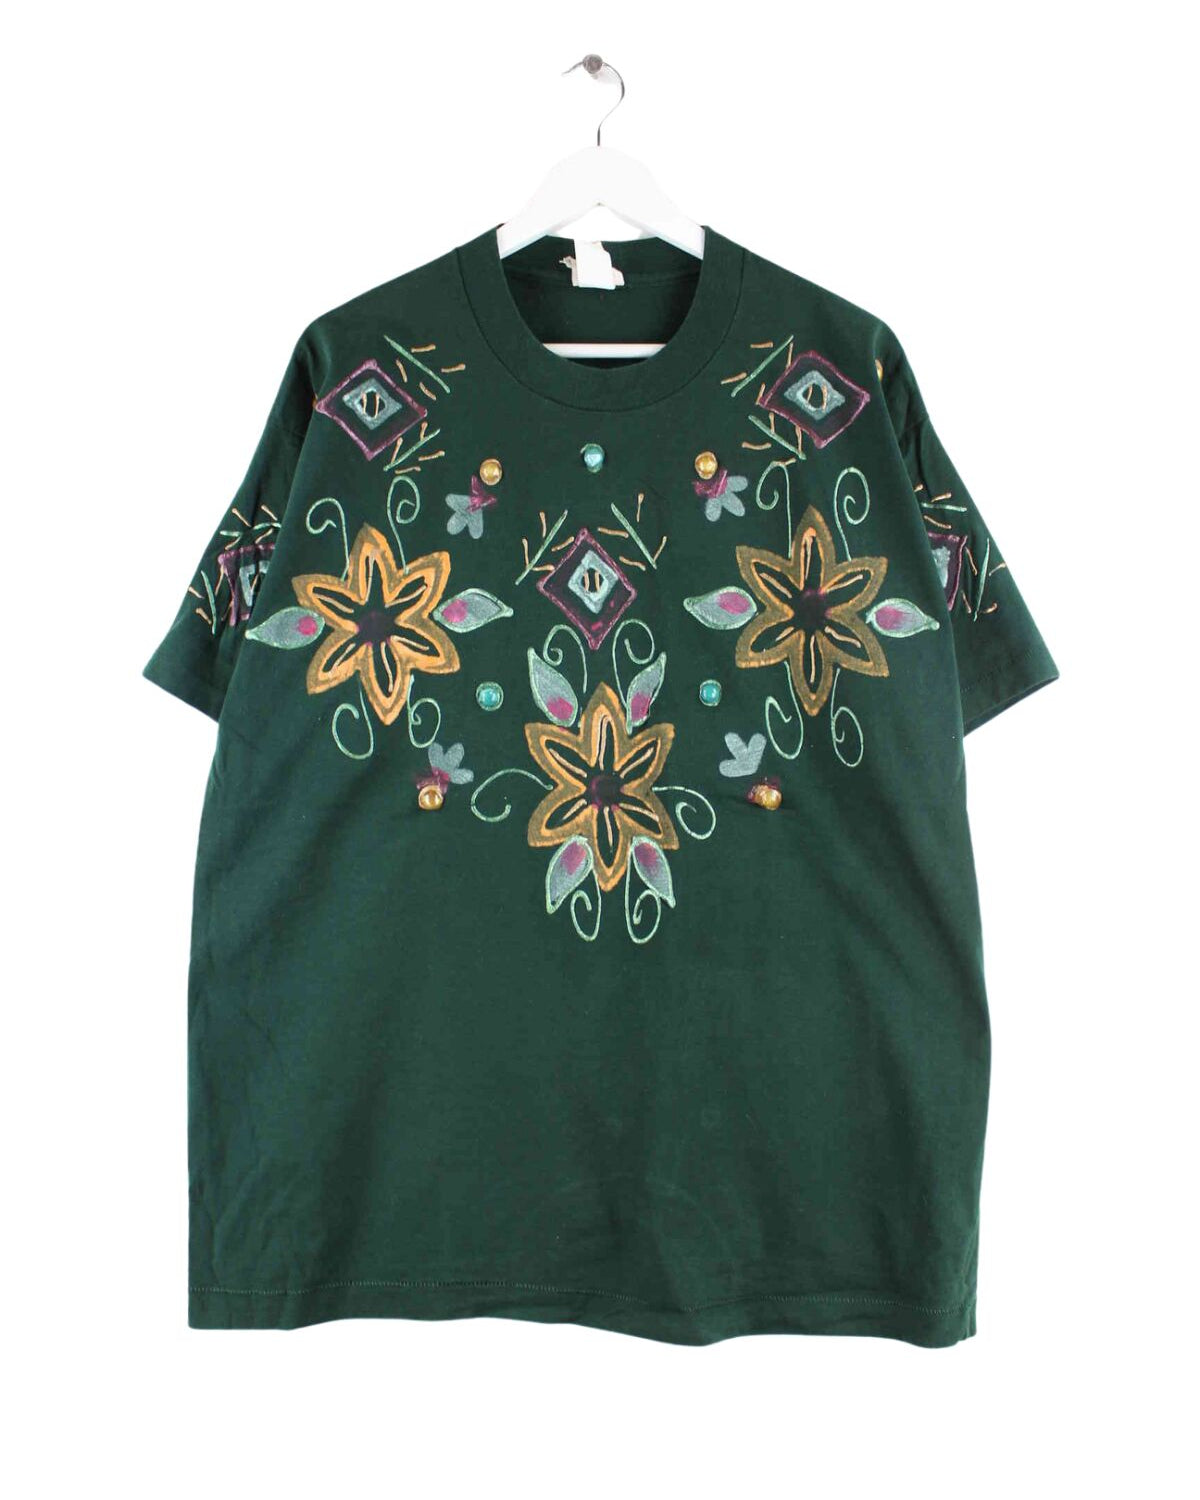 Vintage 90s Painted Single Stitched T-Shirt Grün L (front image)